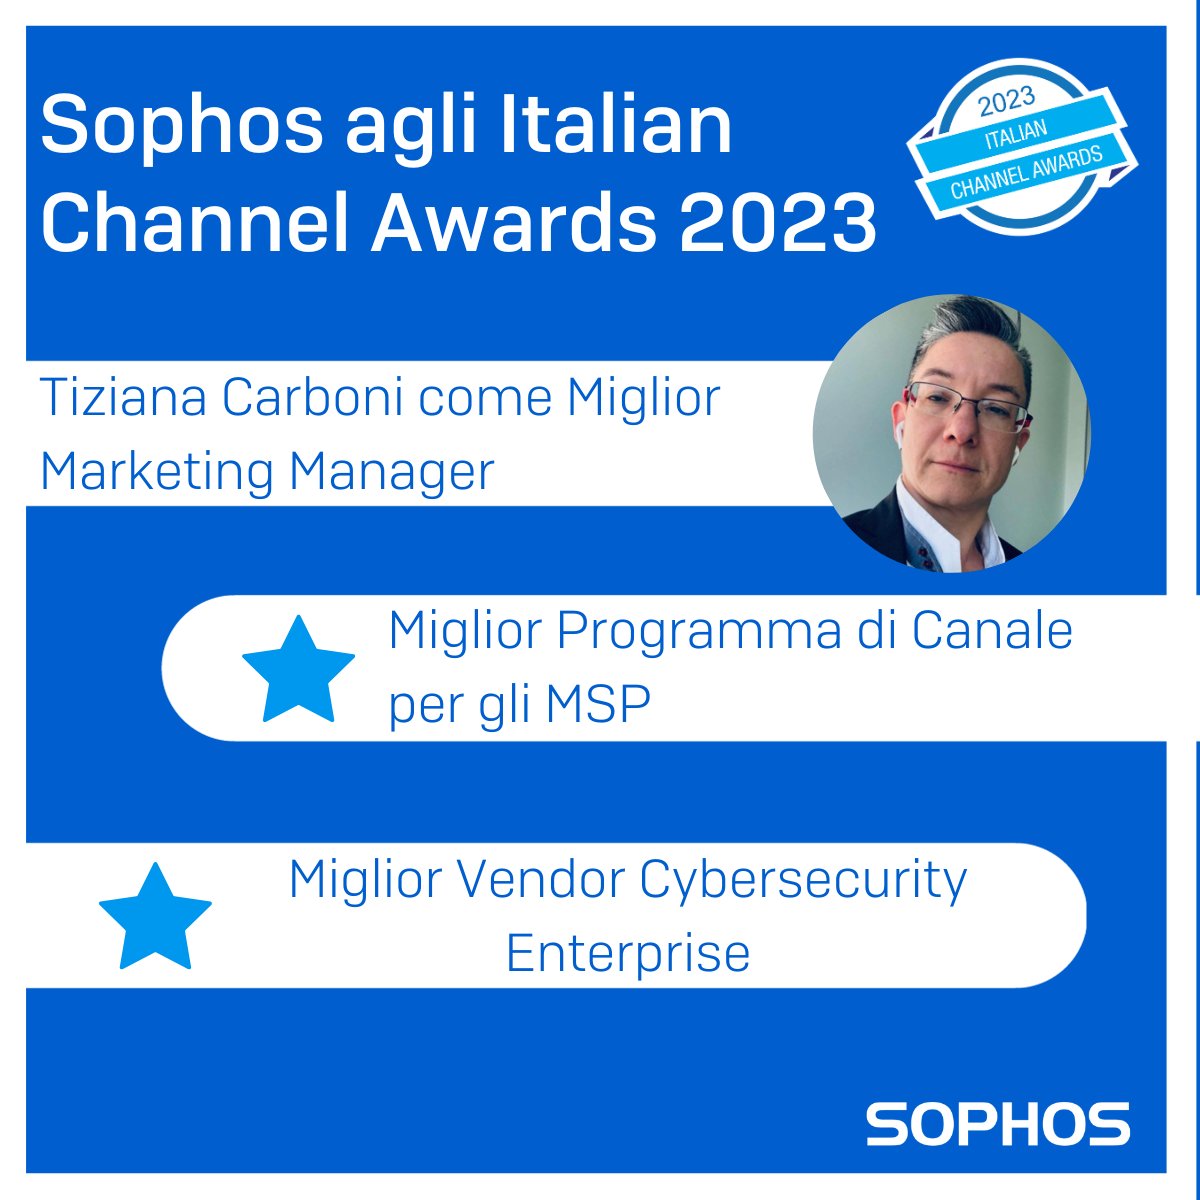 Italian Channel Awards 2023 🏆
Il premio dedicato agli operatori del canale ICT italiano giunge alla sua decima edizione e Sophos è tra i finalisti.

Votaci anche tu!
➡️italianchannelawards.it/votazione_nomi…

#SophosItalia #ICA2K23